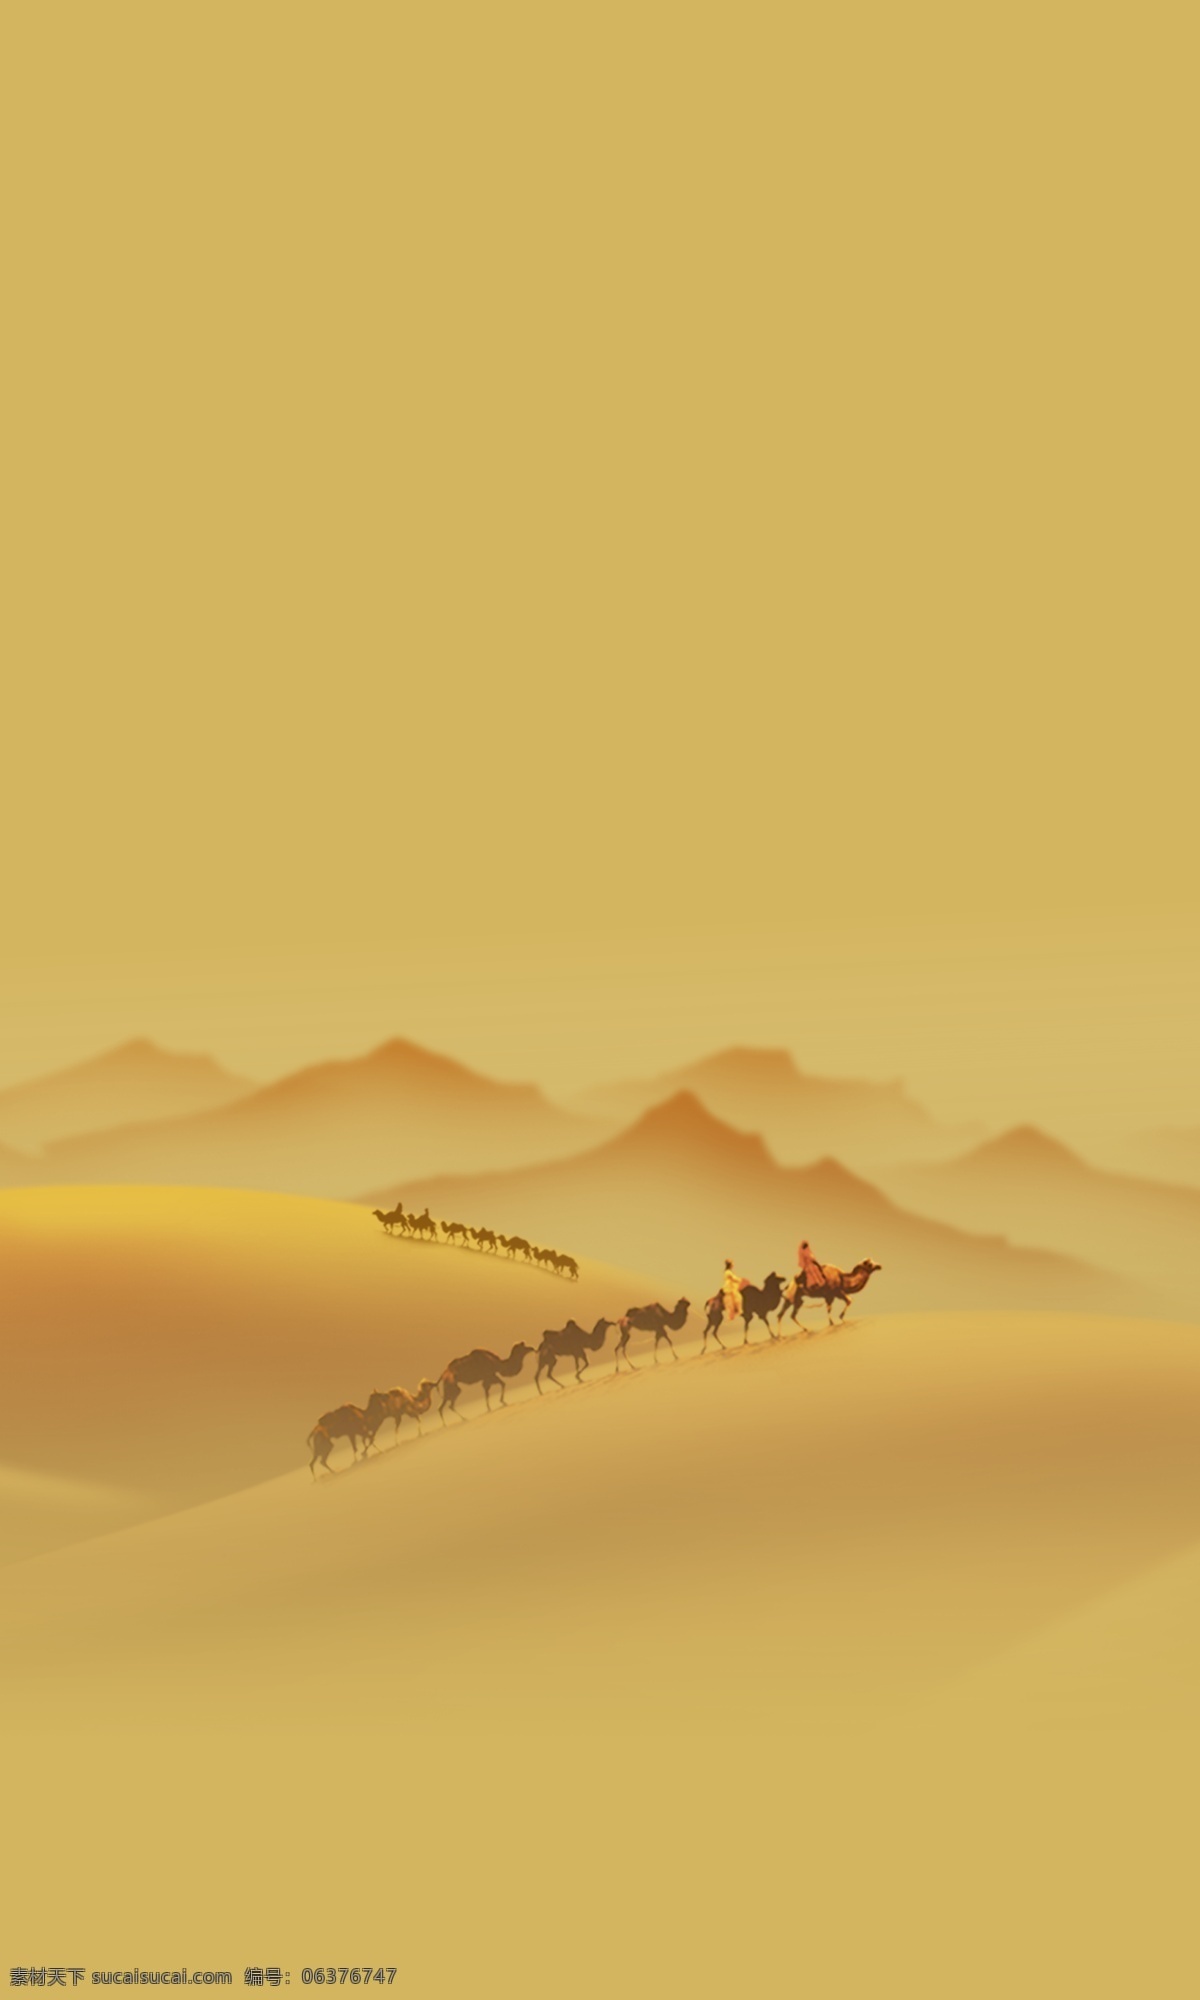 丝路 印象 合成 图 新疆 丝绸之路 沙漠 山峰 印象图 传统文化 文化艺术